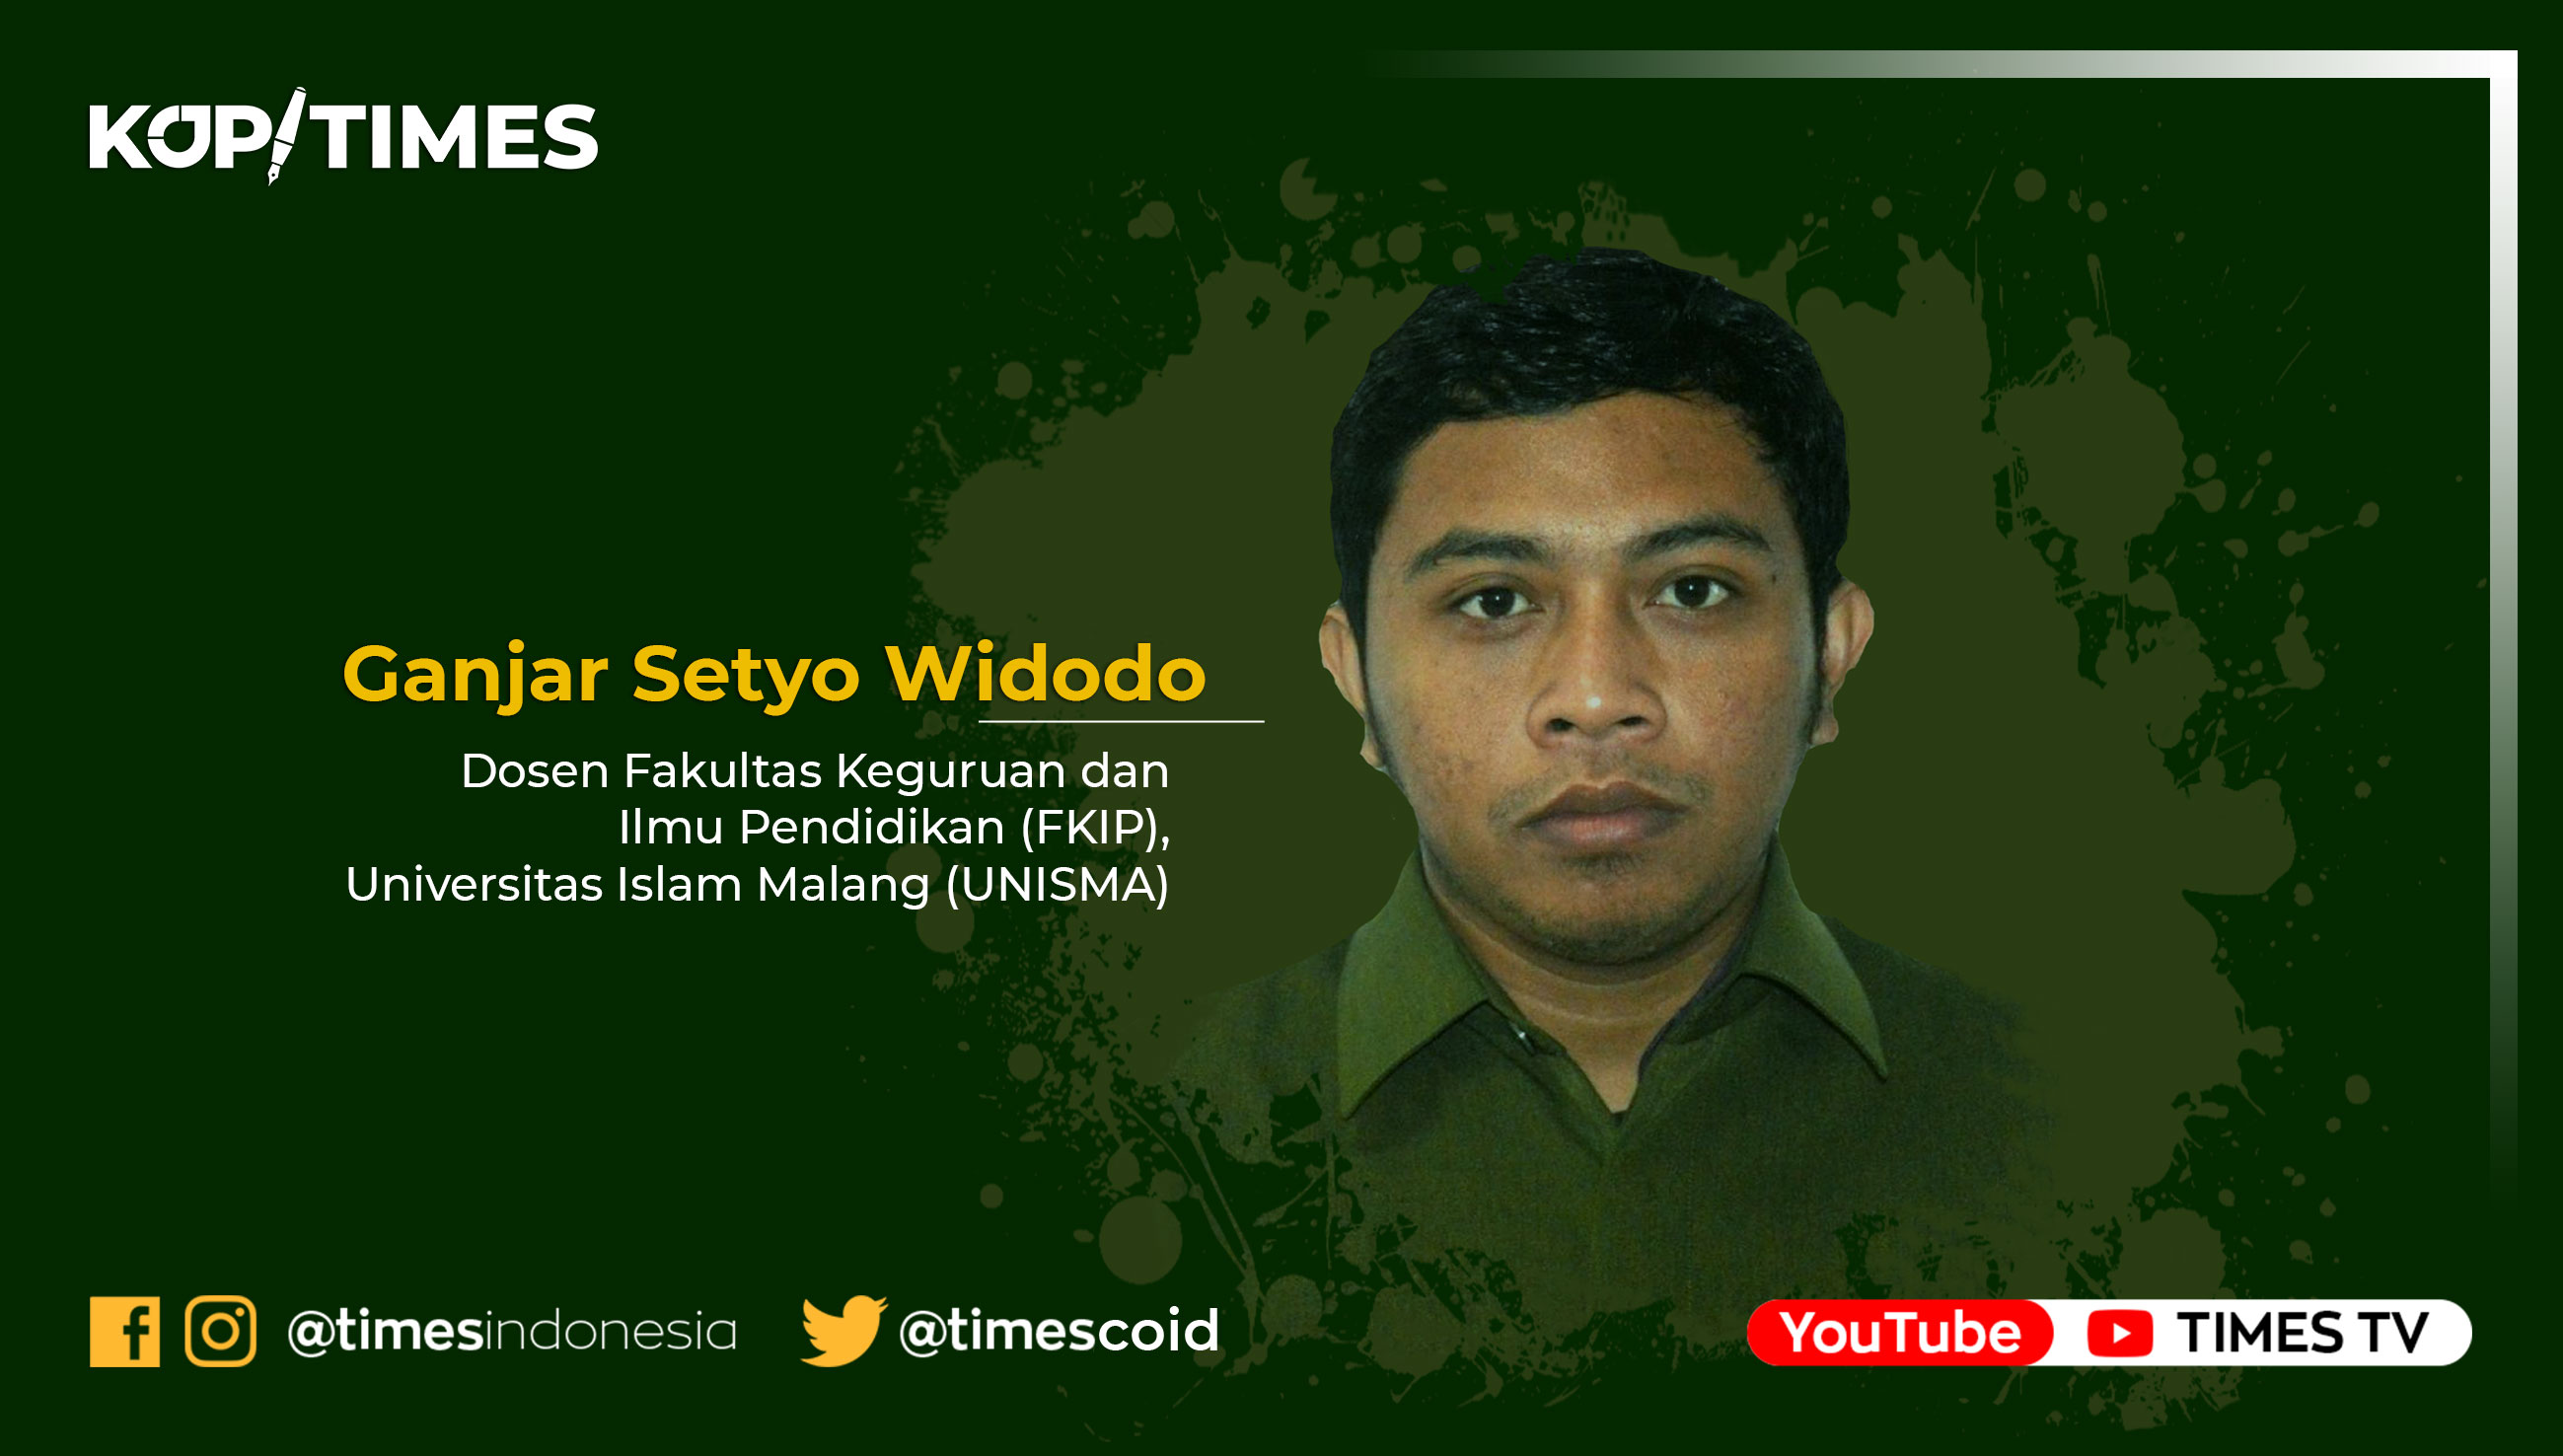 Ganjar Setyo Widodo, Dosen Fakultas Keguruan dan Ilmu Pendidikan (FKIP) Universitas Islam Malang (UNISMA).